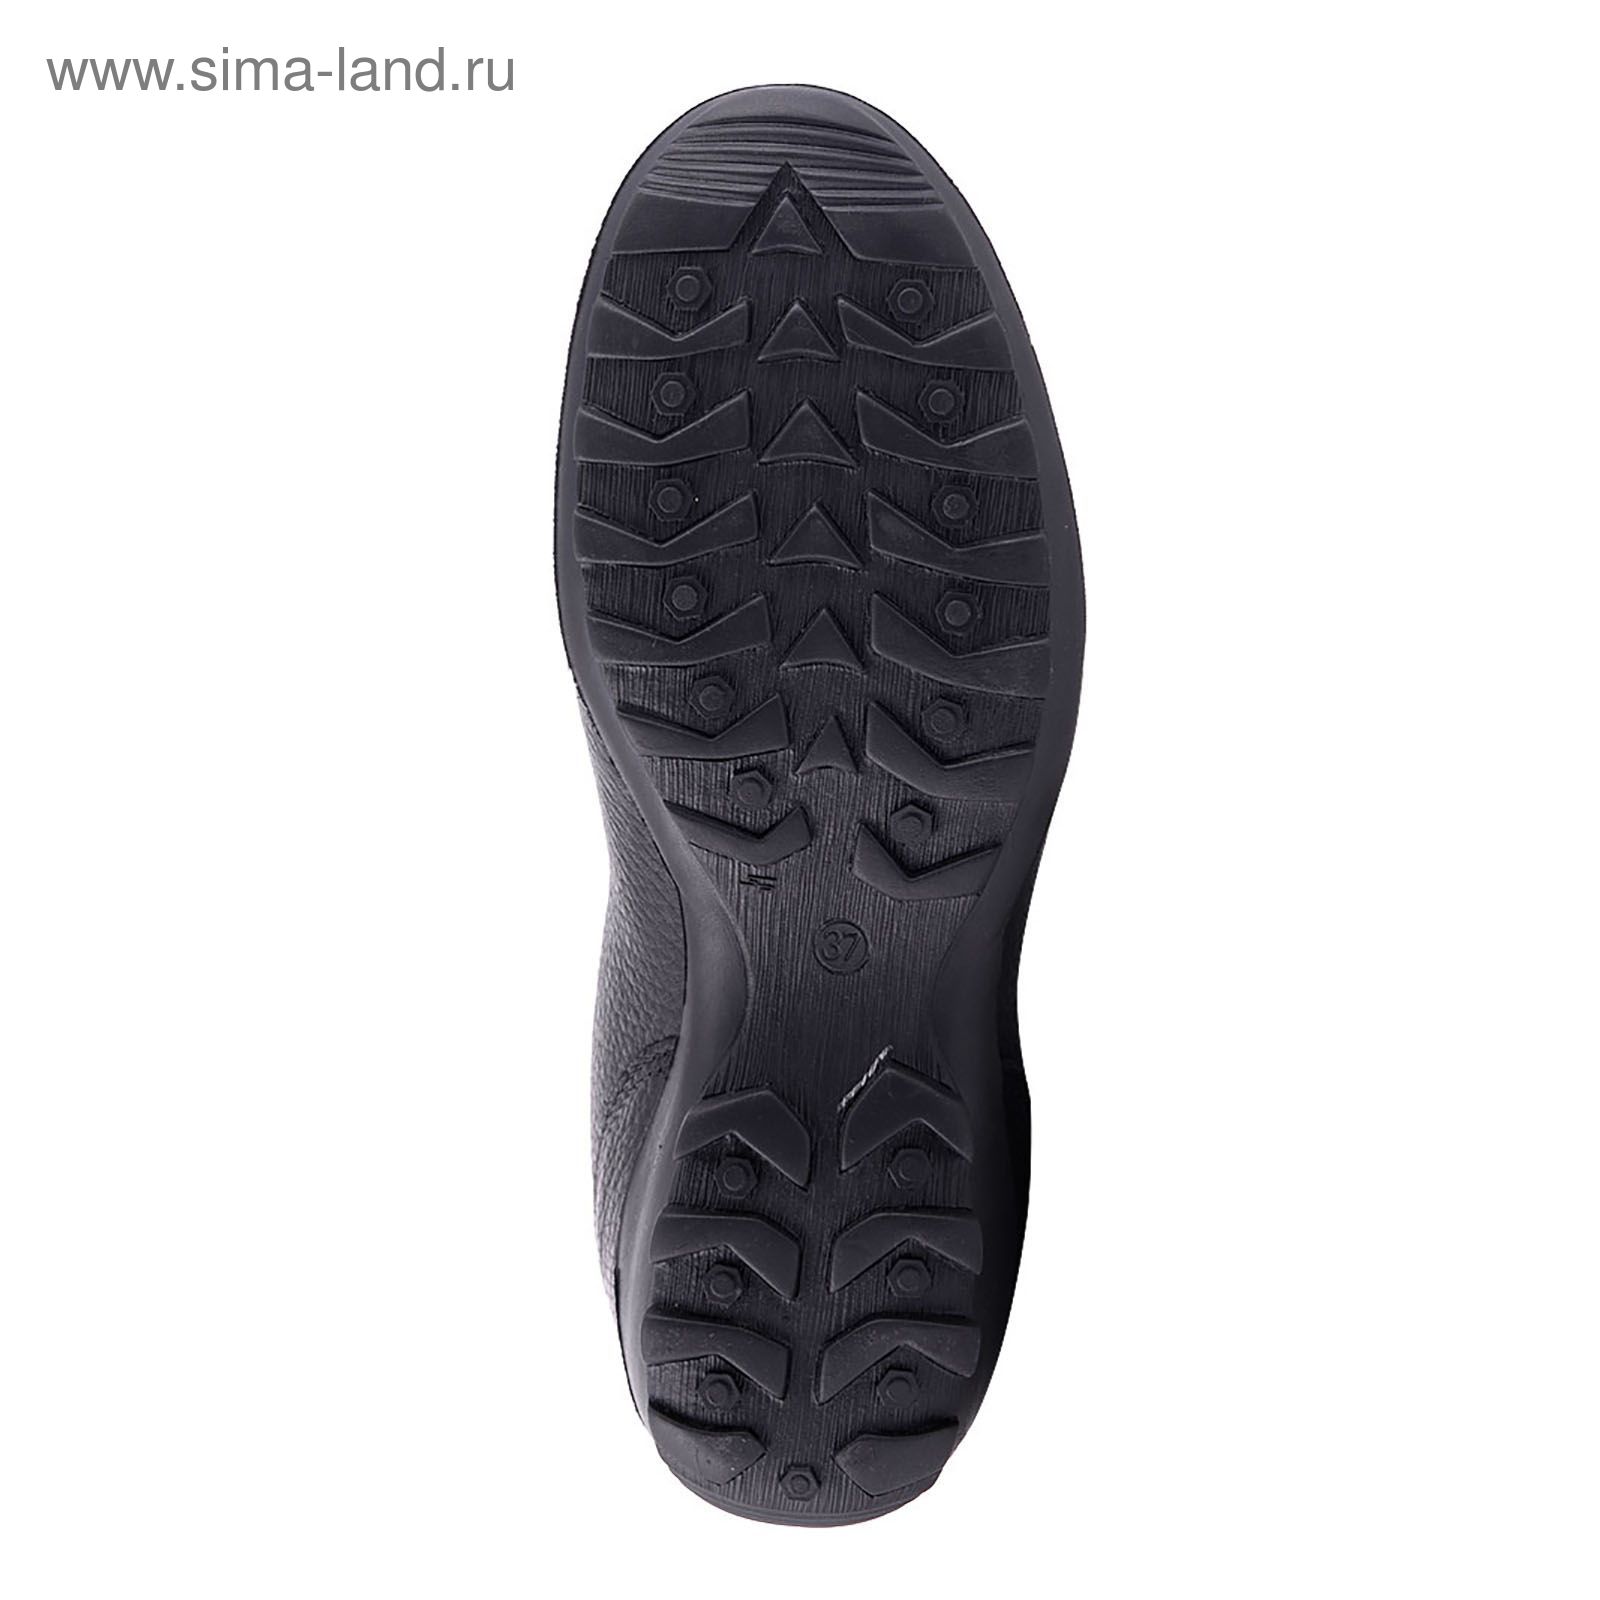 Ботинки TREK Спринт 93-01 мех (черный) (р.36)